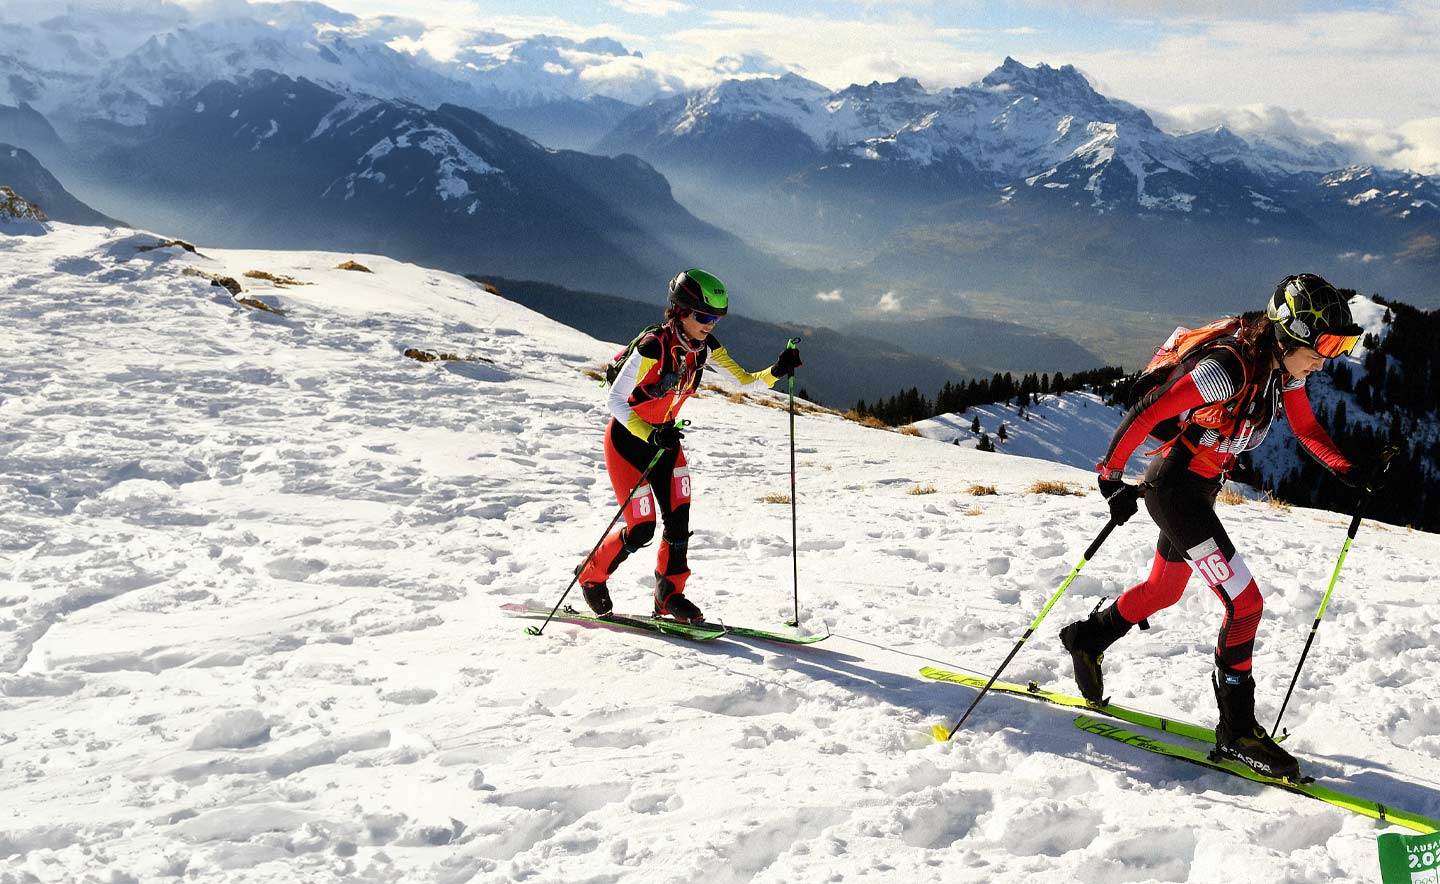 Ares Torra Gendrau (à gauche) d'Espagne et Lisa Rettensteiner d'Autriche concourent dans l'épreuve individuelle de ski-alpinisme lors du premier jour des Jeux olympiques de la jeunesse d'hiver de Lausanne 2020 le 10 janvier 2020 à Villars-sur-Ollon, en Suisse.